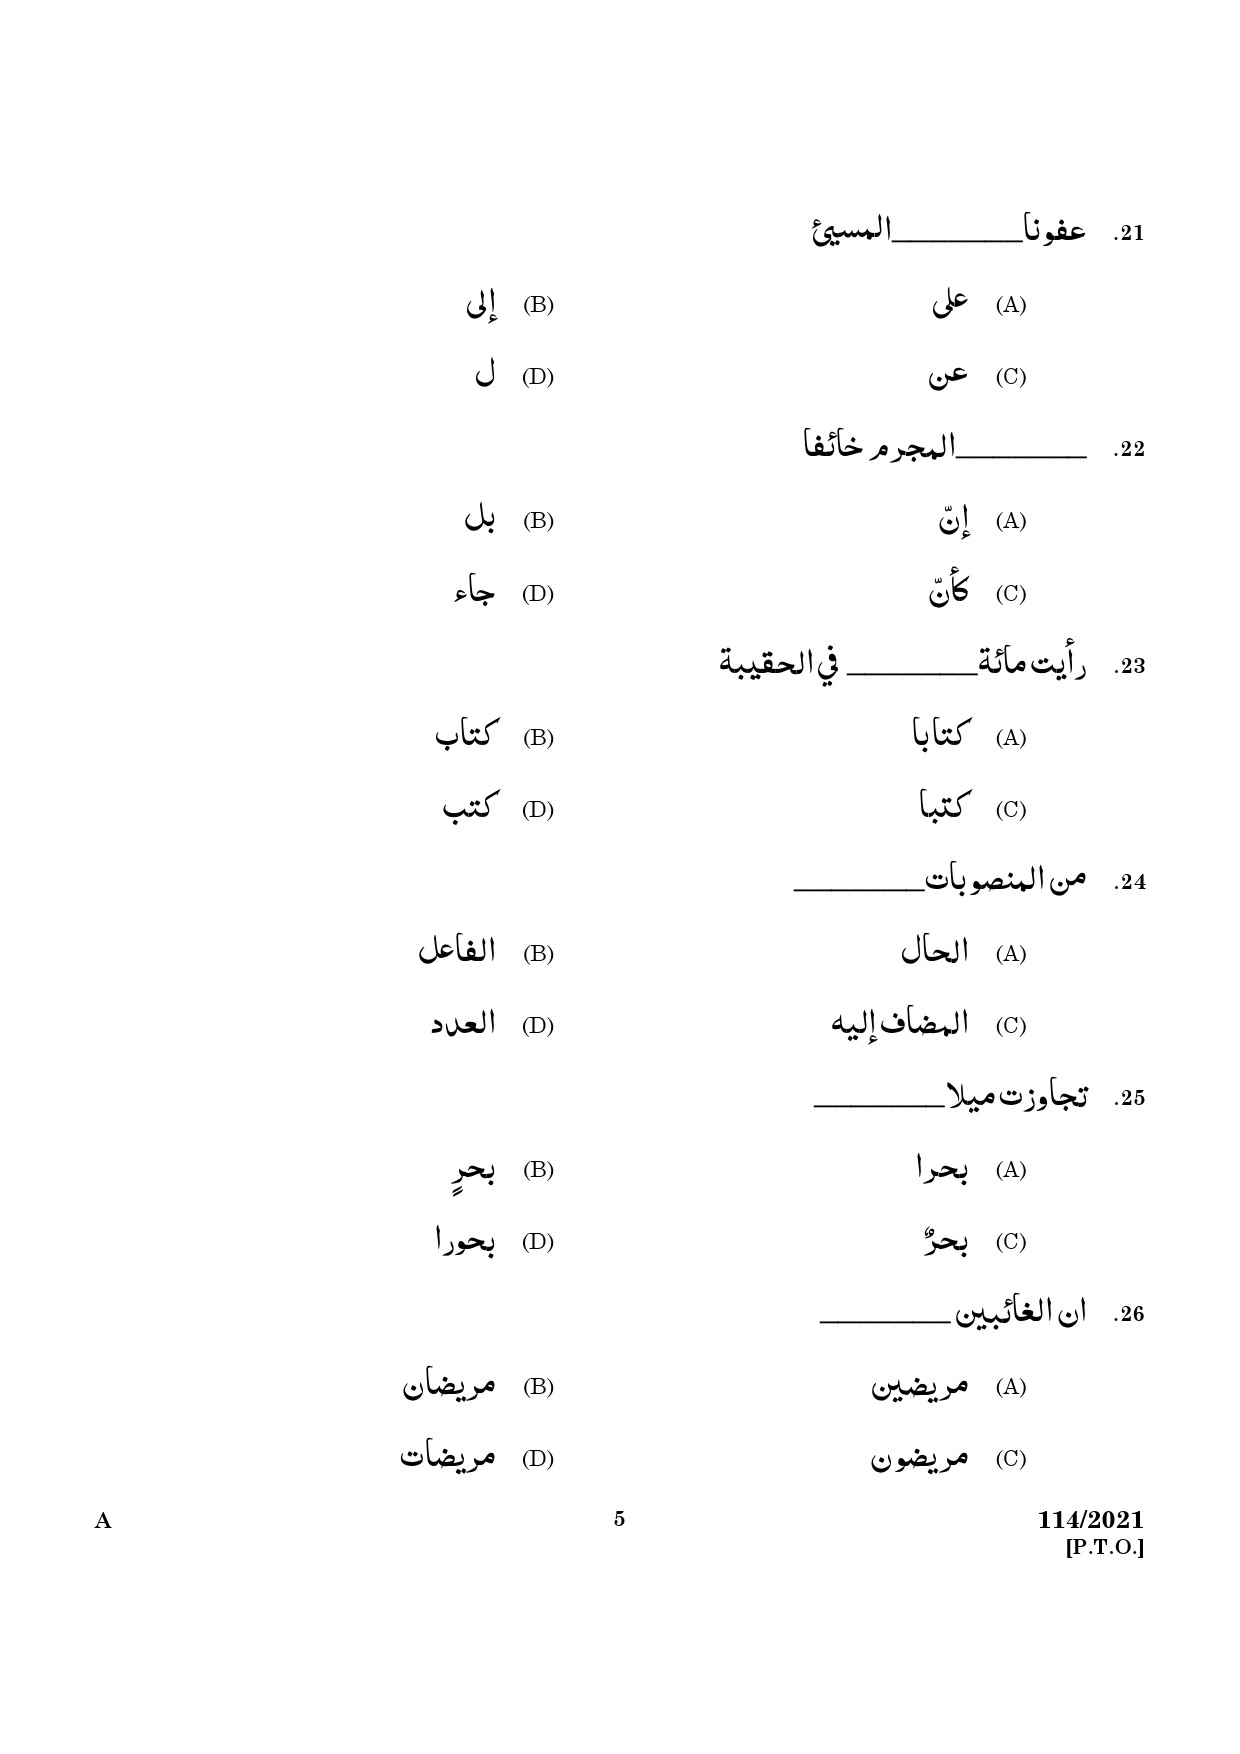 KPSC Full Time Junior Language Teacher Arabic Exam 2021 Code 1142021 3